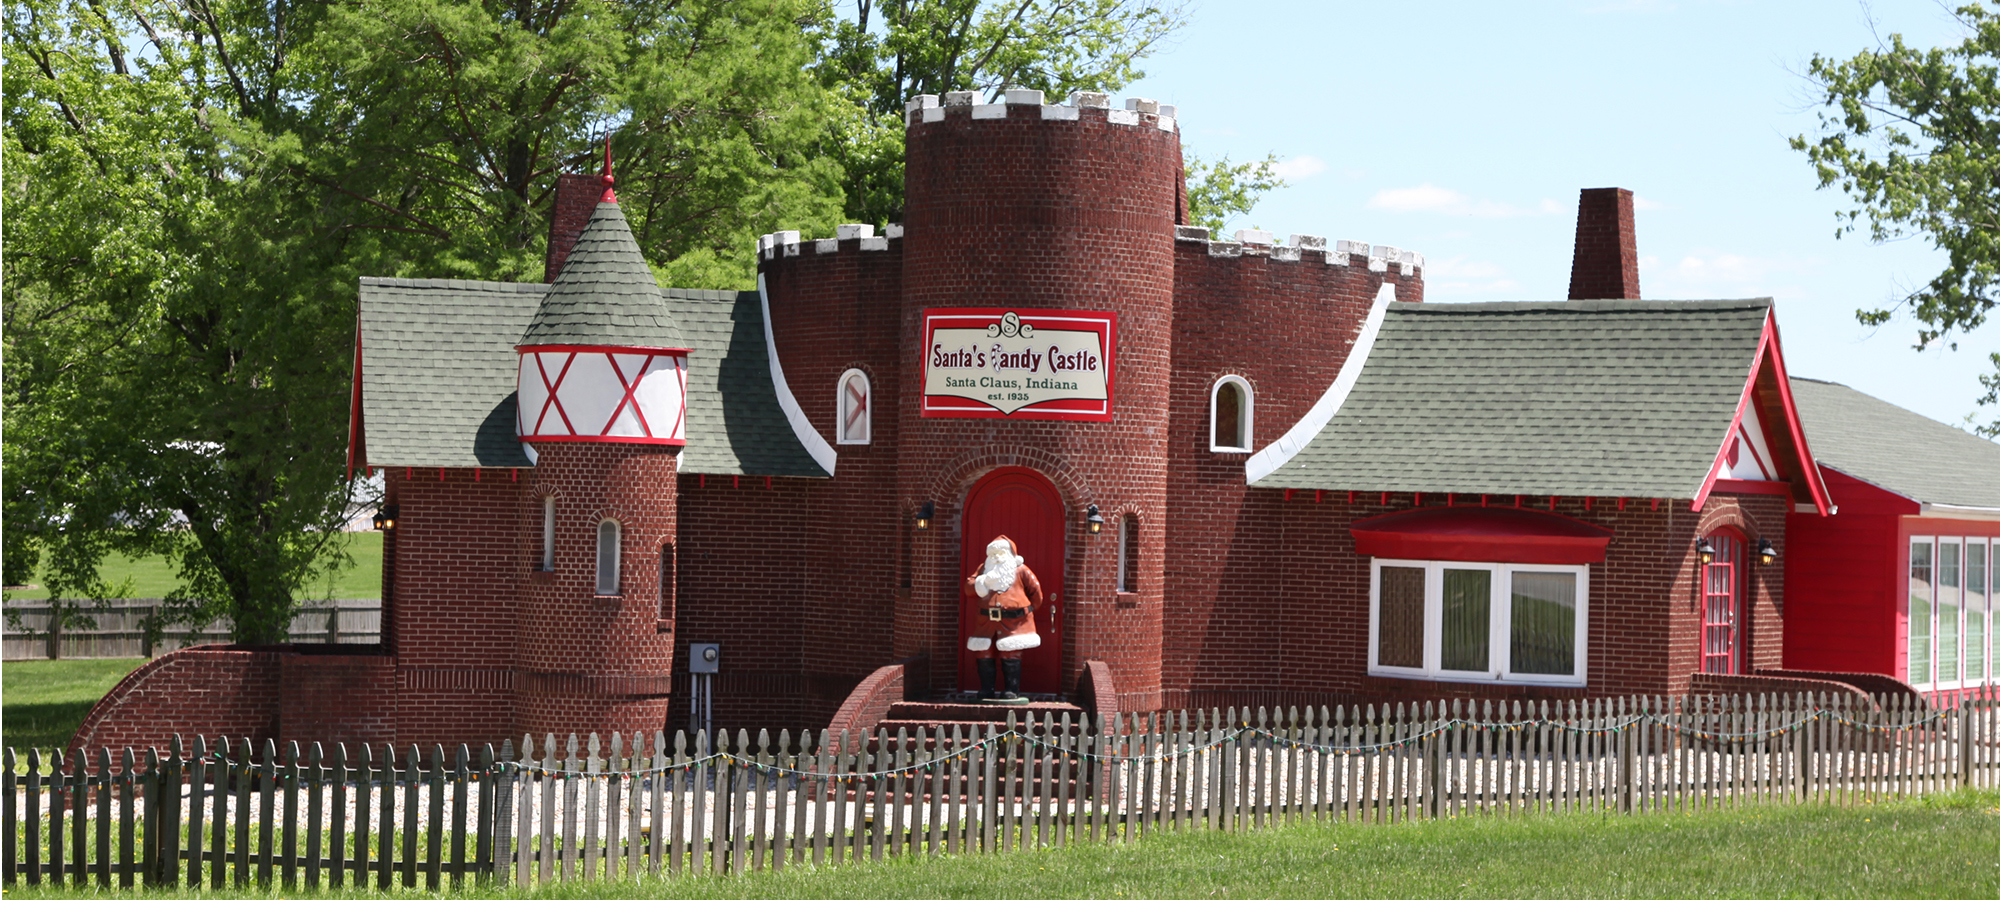 Santa's Candy Castle